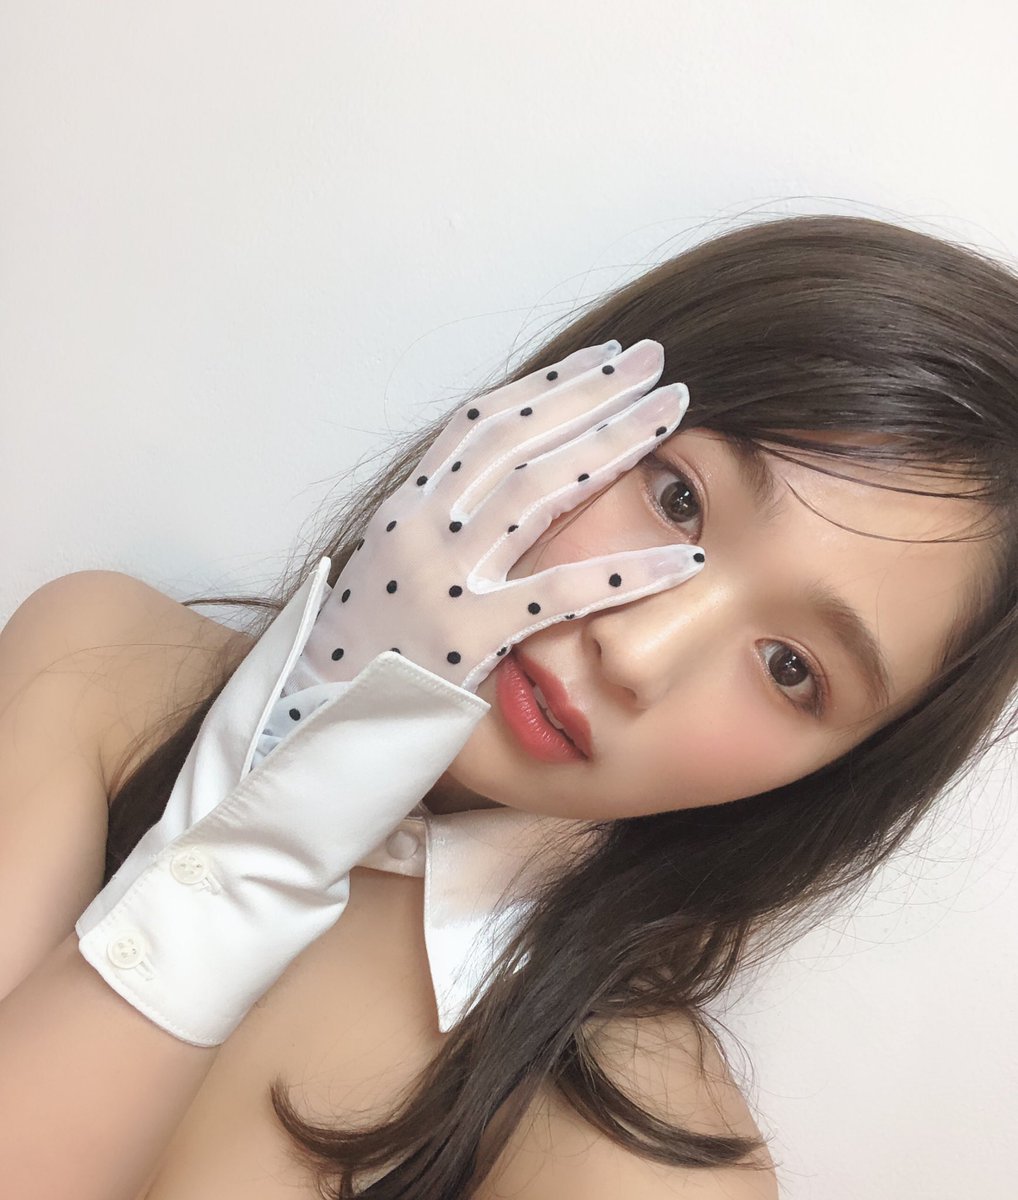 NMB48渋谷凪咲さんの水着姿がセクシーなグラビア画像-068